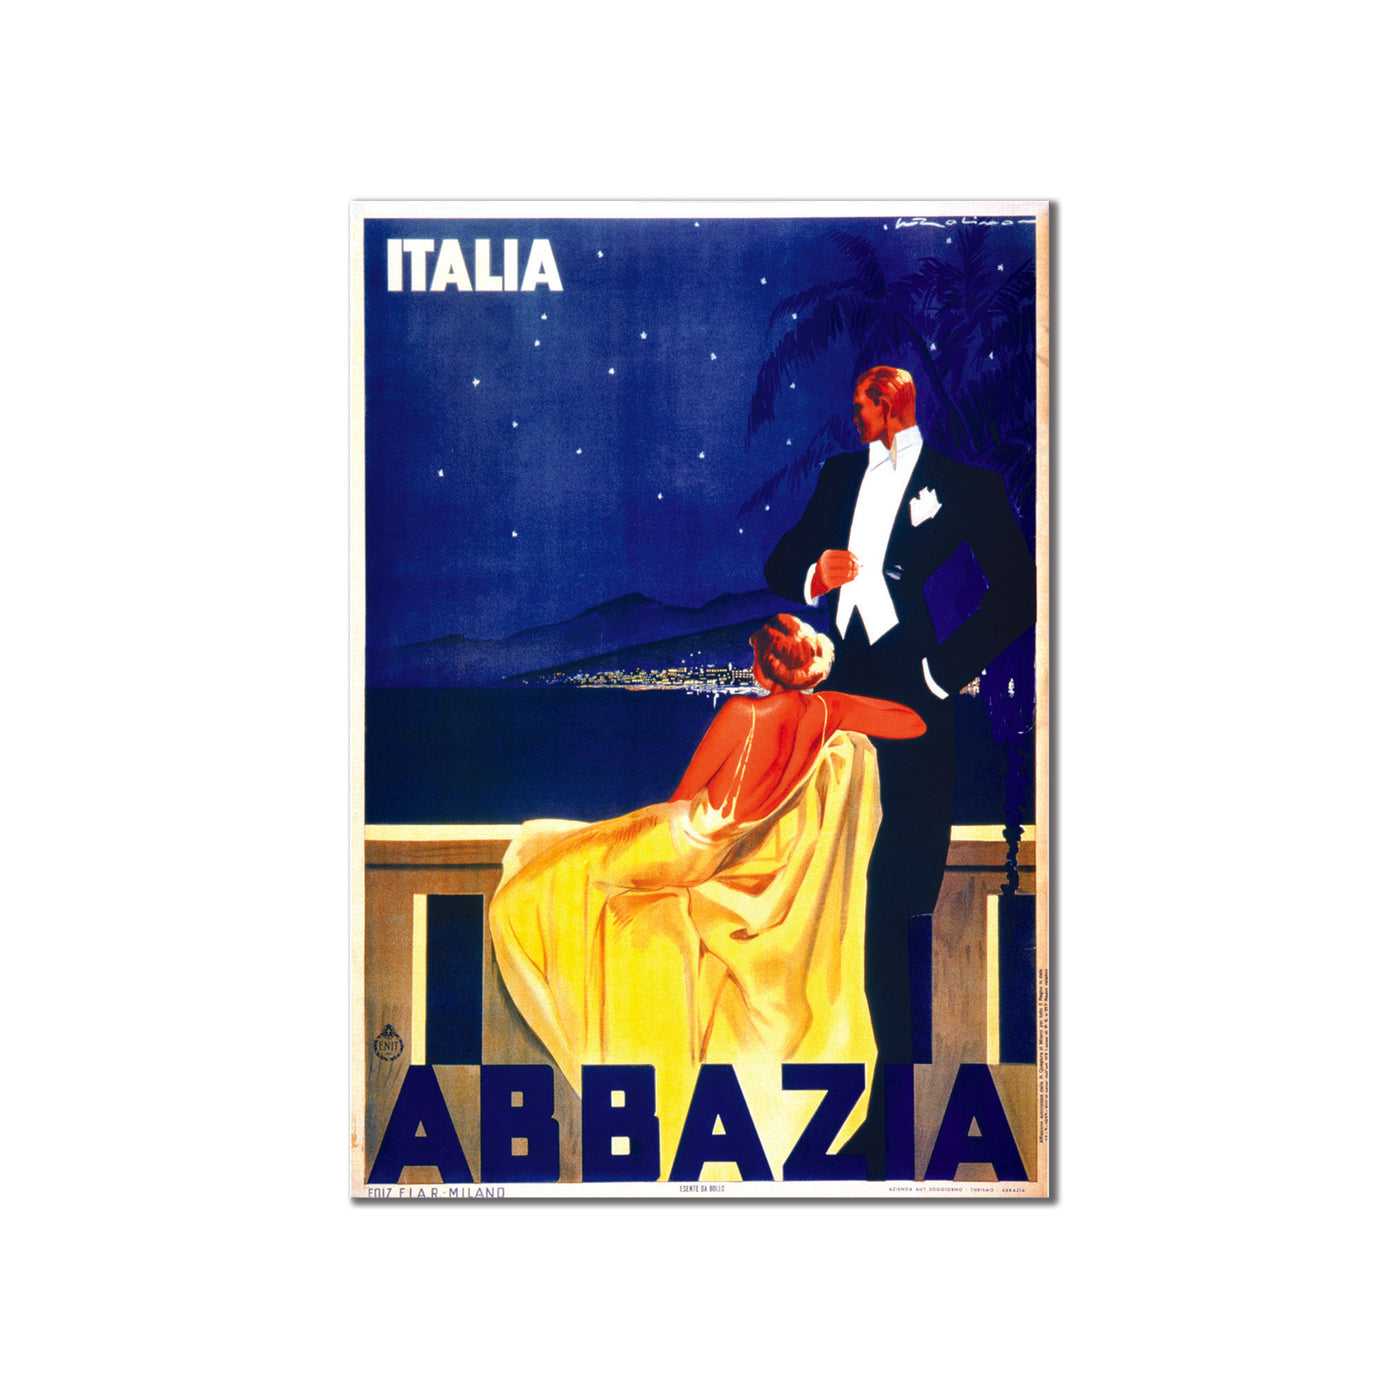 Italia Abbazia